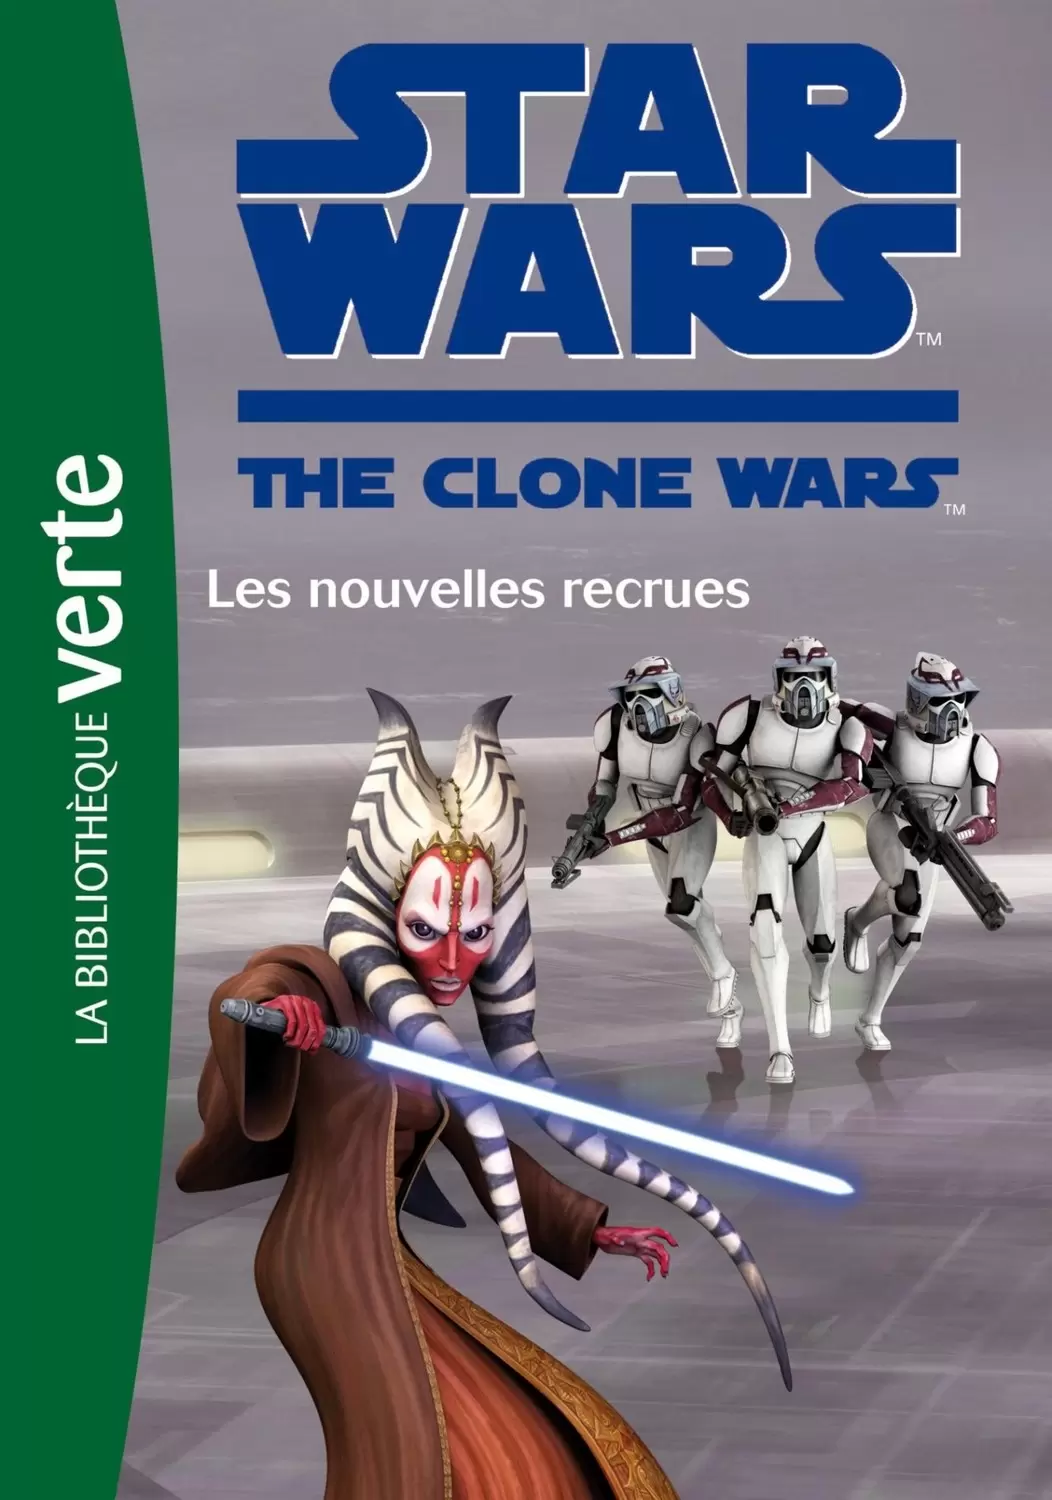 Star Wars The Clone Wars - Les nouvelles recrues